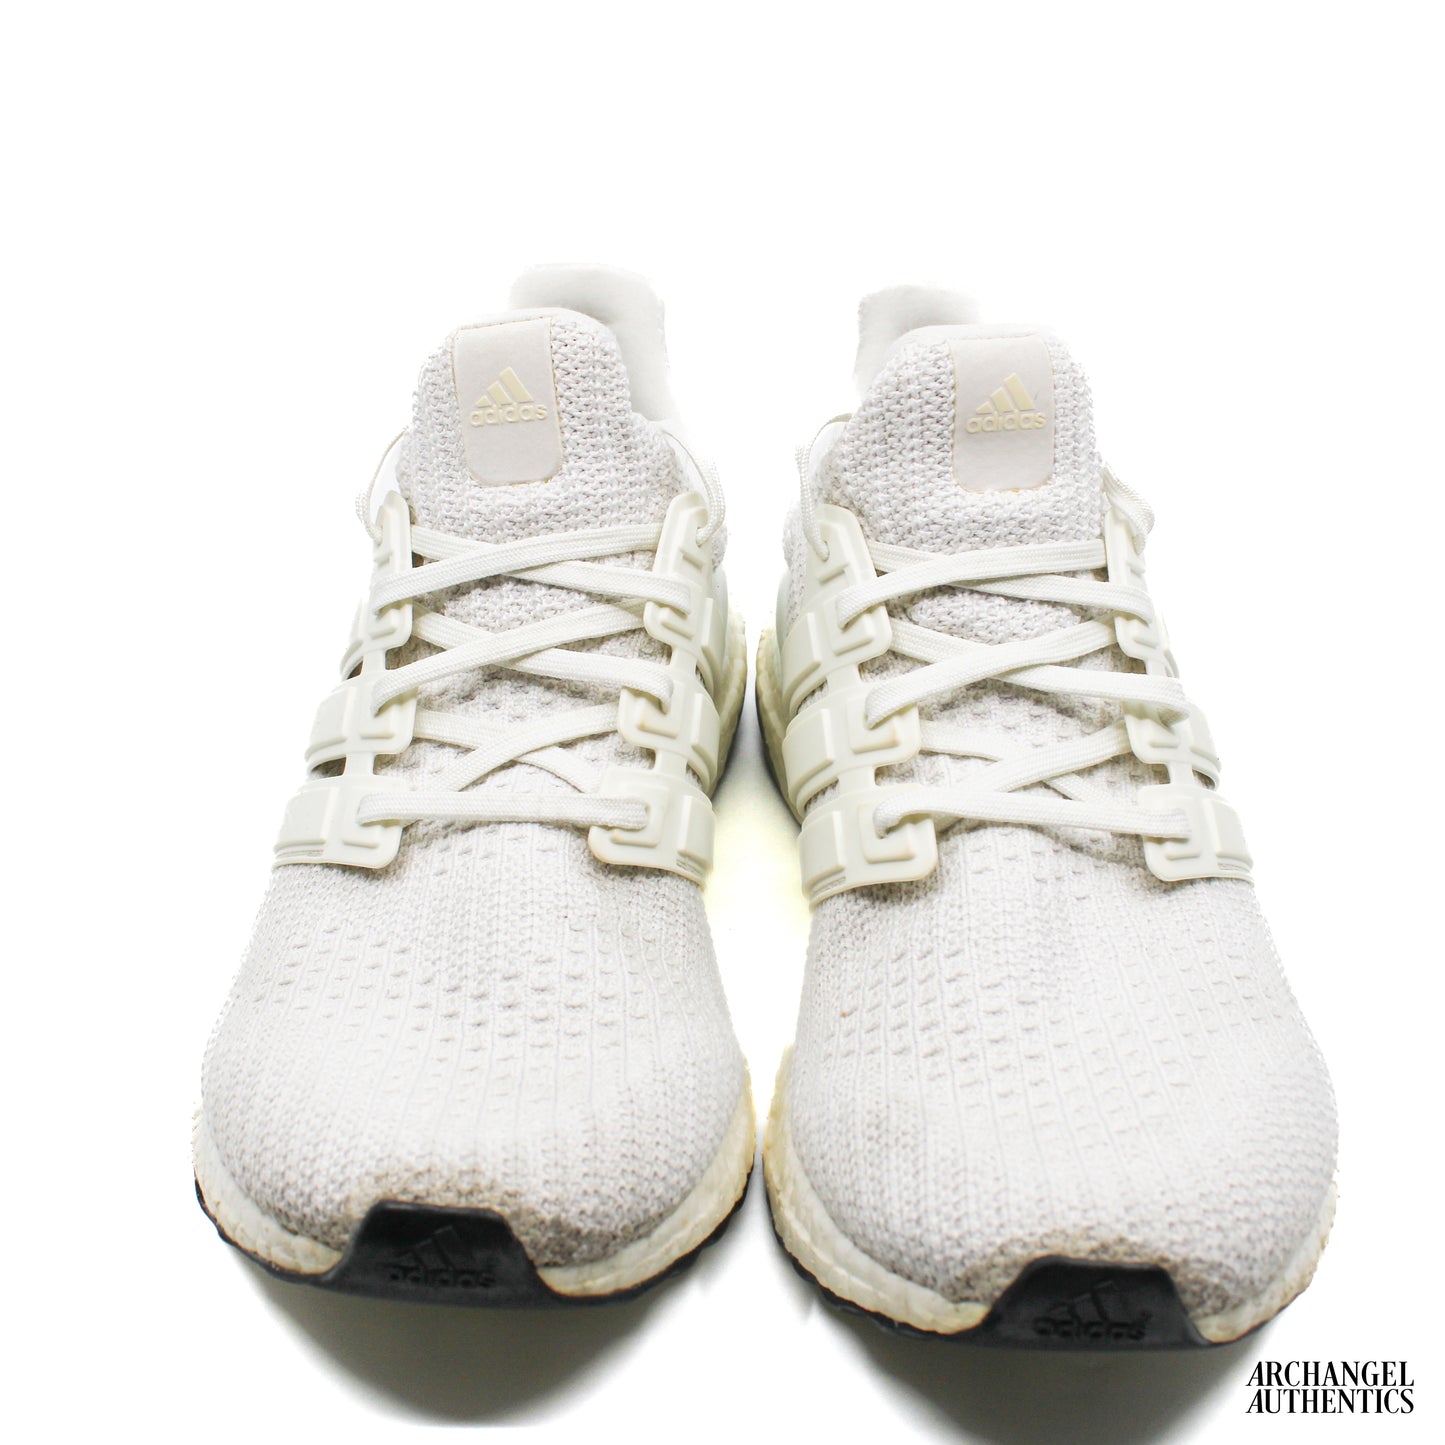 Adidas Ultra Boost 4.0 Corriendo Blancas